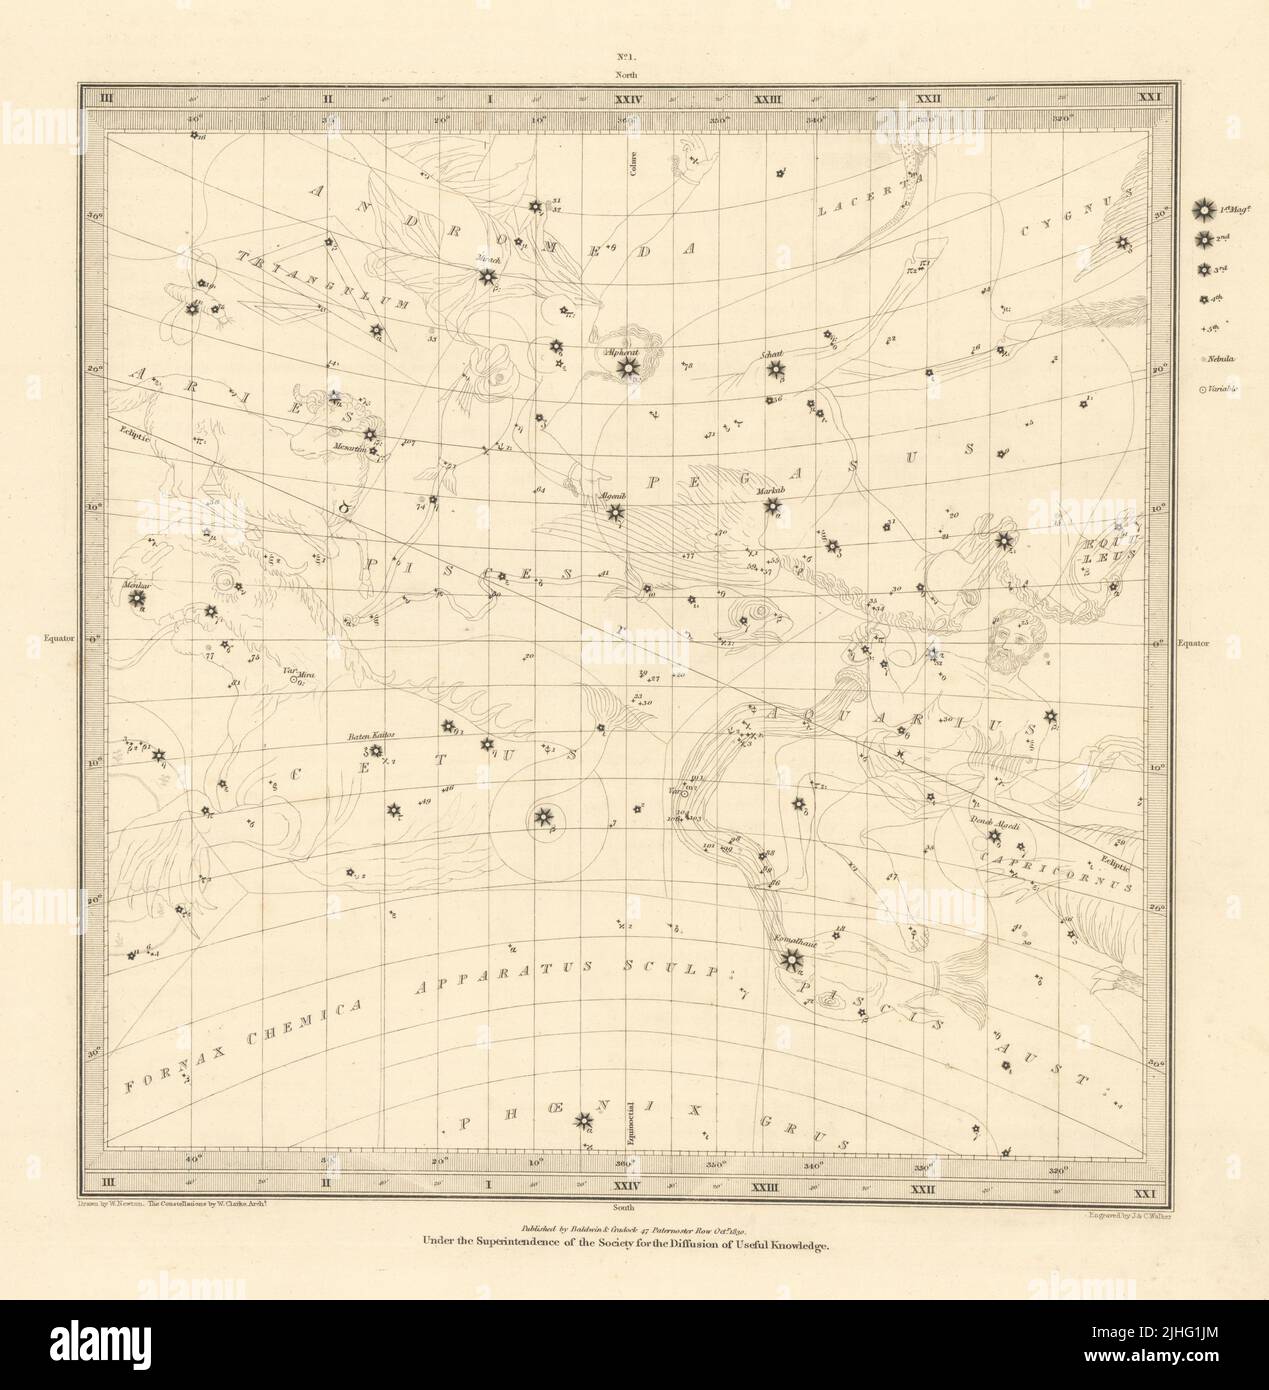 ASTRONOMIA CELESTE. Mappa delle stelle. Star chart, I. Equinox Vernal. SDUK 1830 Foto Stock